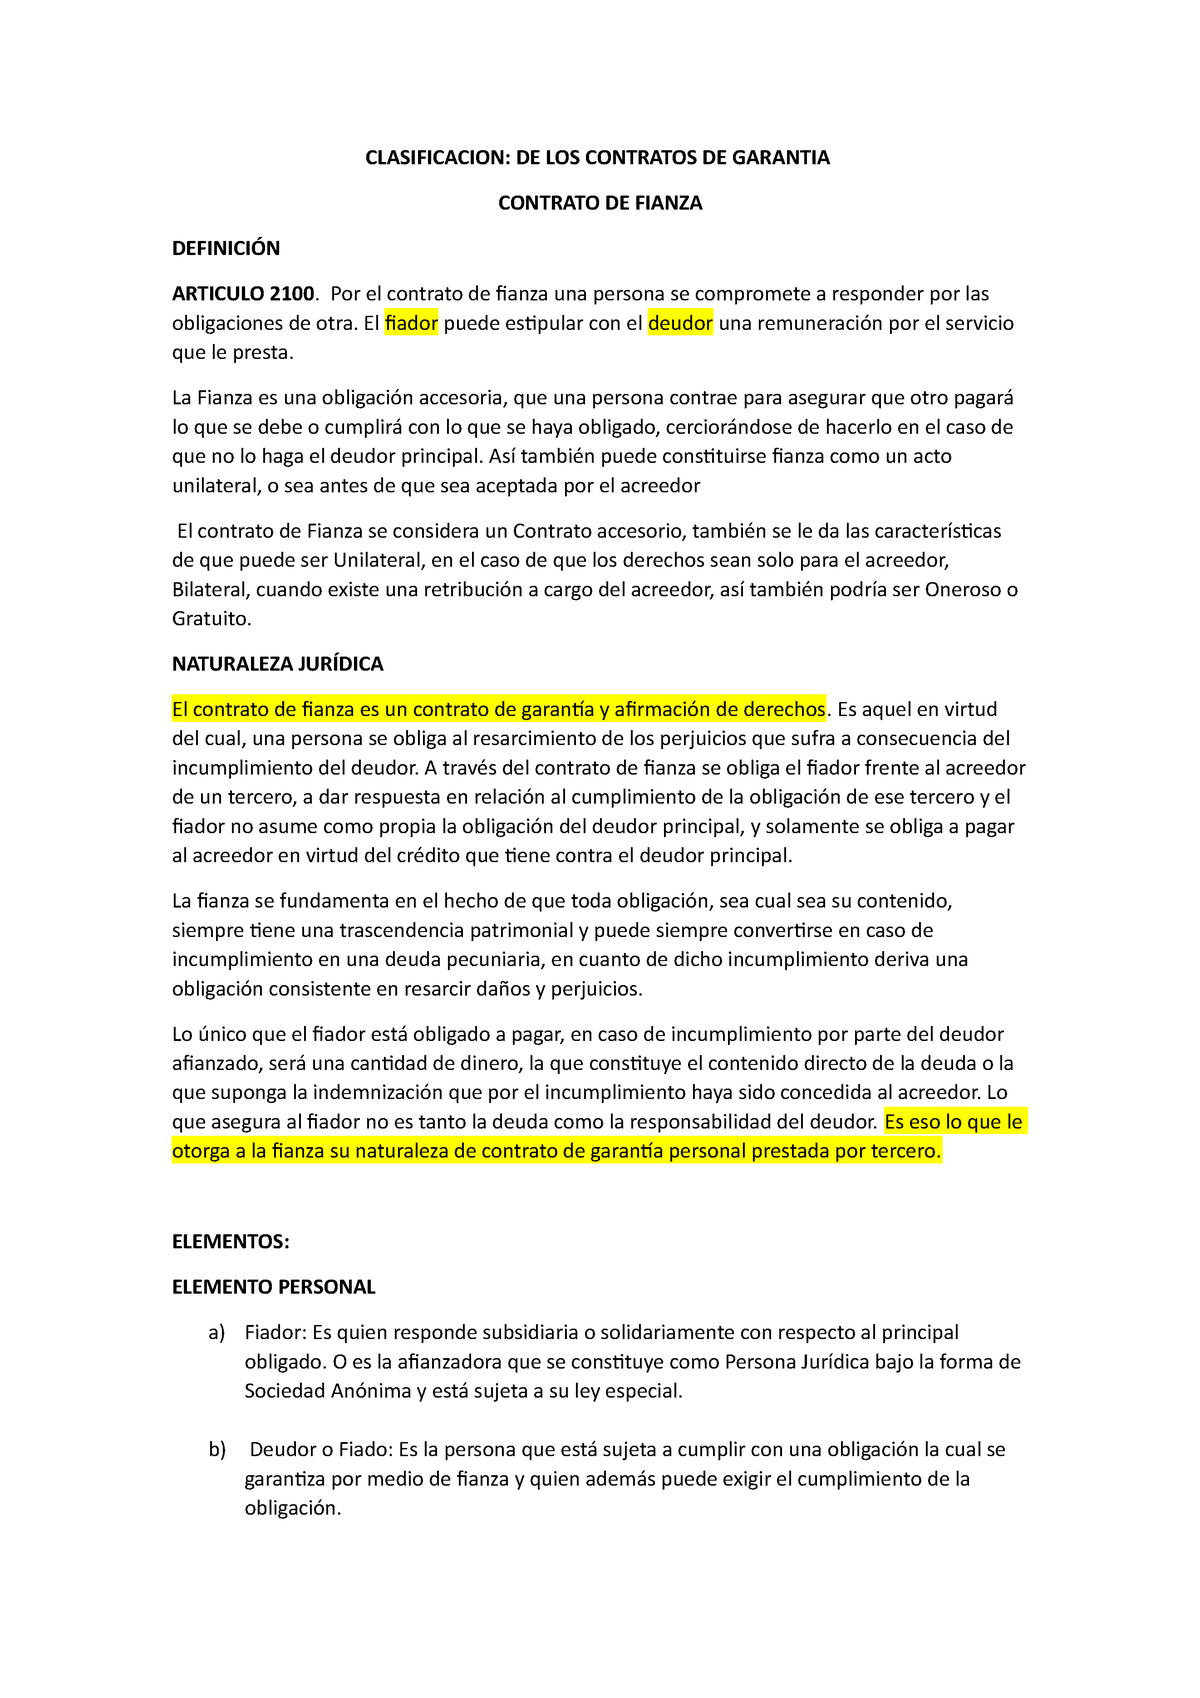 Contrato De Fianza Resumen Clasificacion De Los Contratos De Garantia Contrato De Fianza 4289